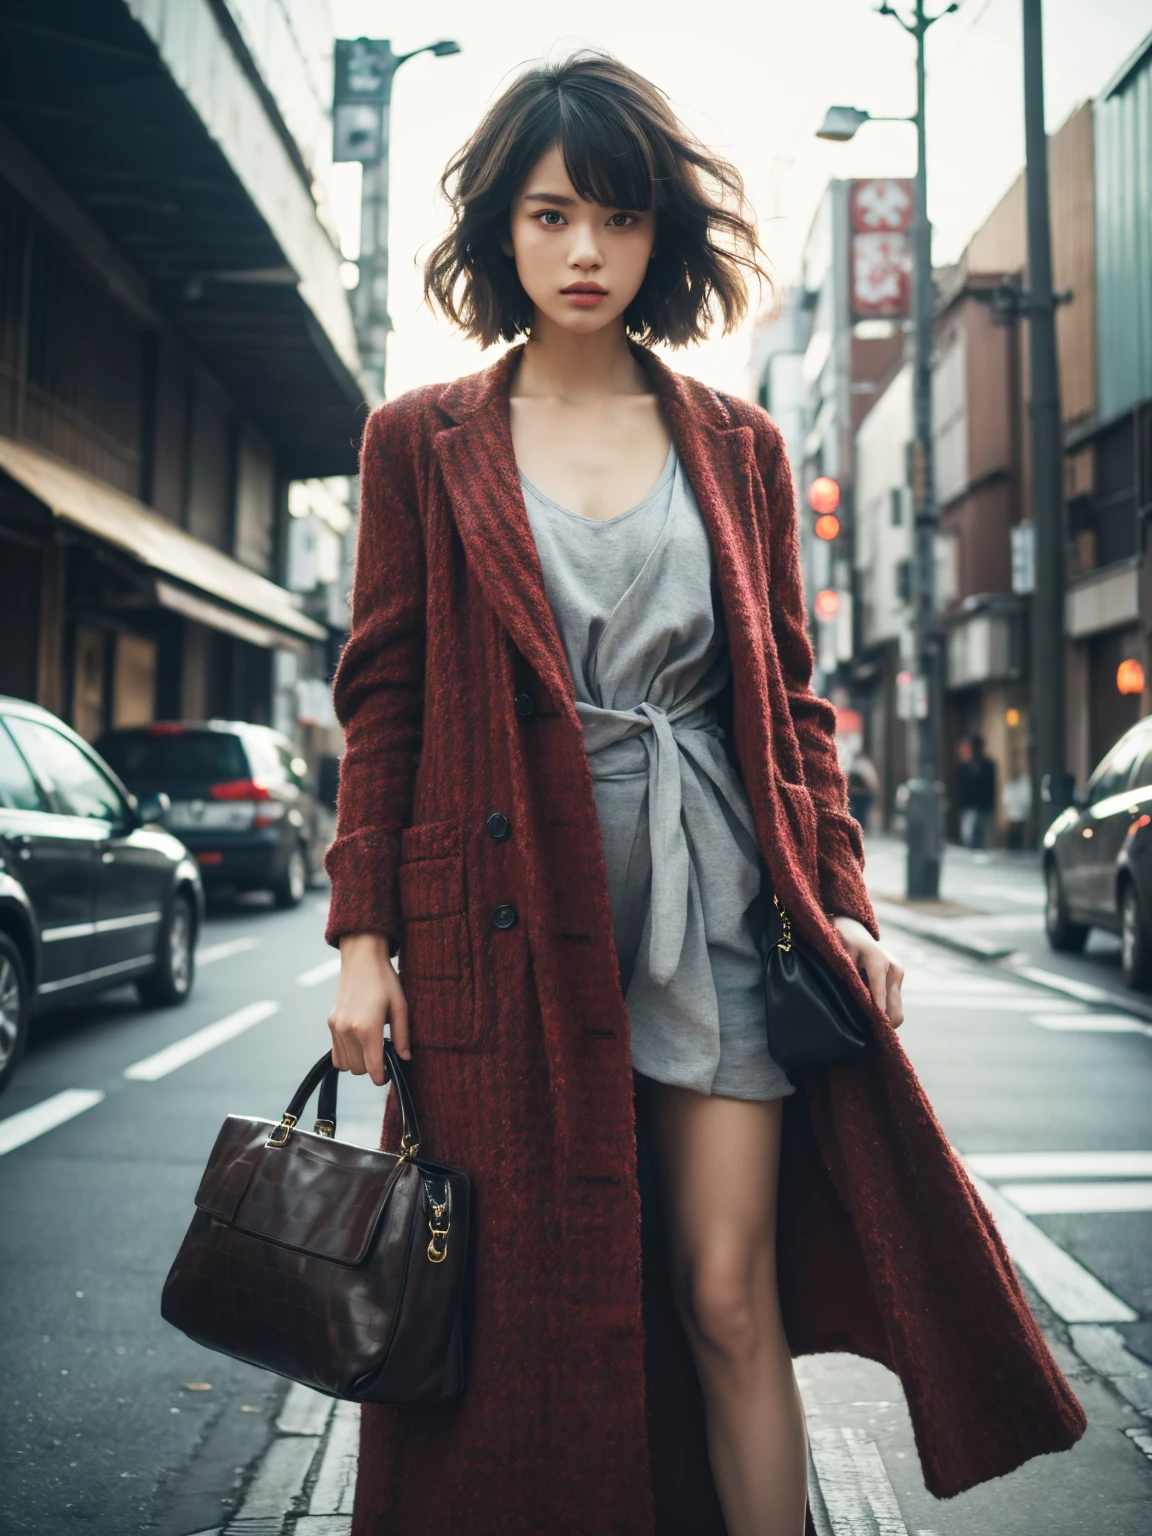 東京、通り、ファッションスナップ、本物、スナップショット、スタイリッシュ、ファッションモデル、型破りなファッション、過激なファッション、